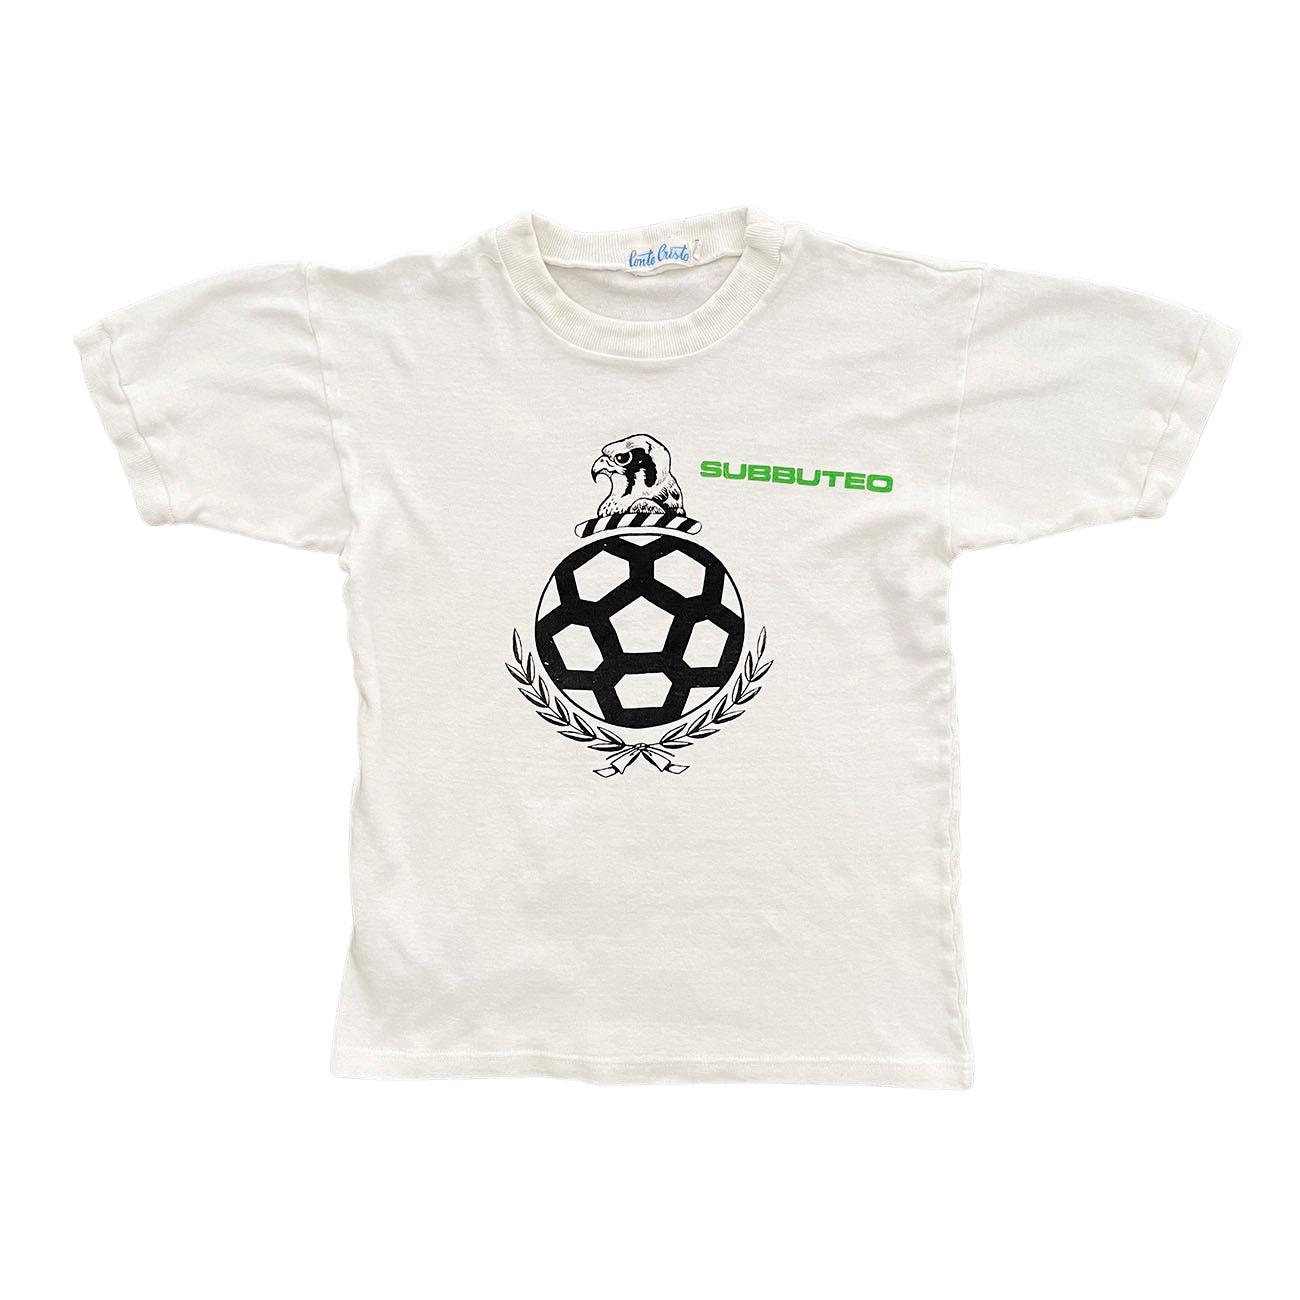 Subbuteo Graphic T-Shirt - XS